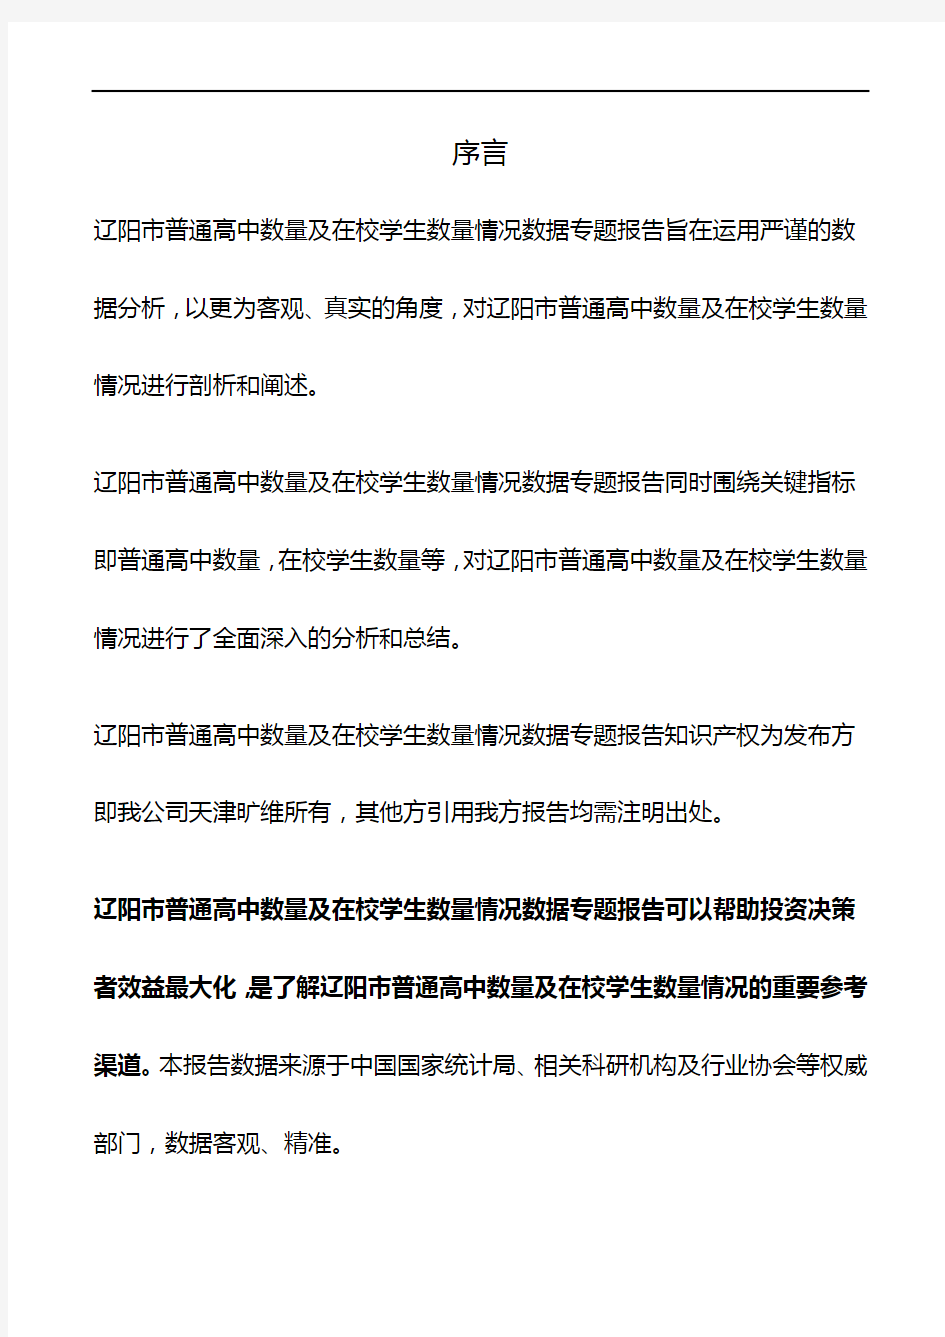 辽宁省辽阳市普通高中数量及在校学生数量情况3年数据专题报告2019版